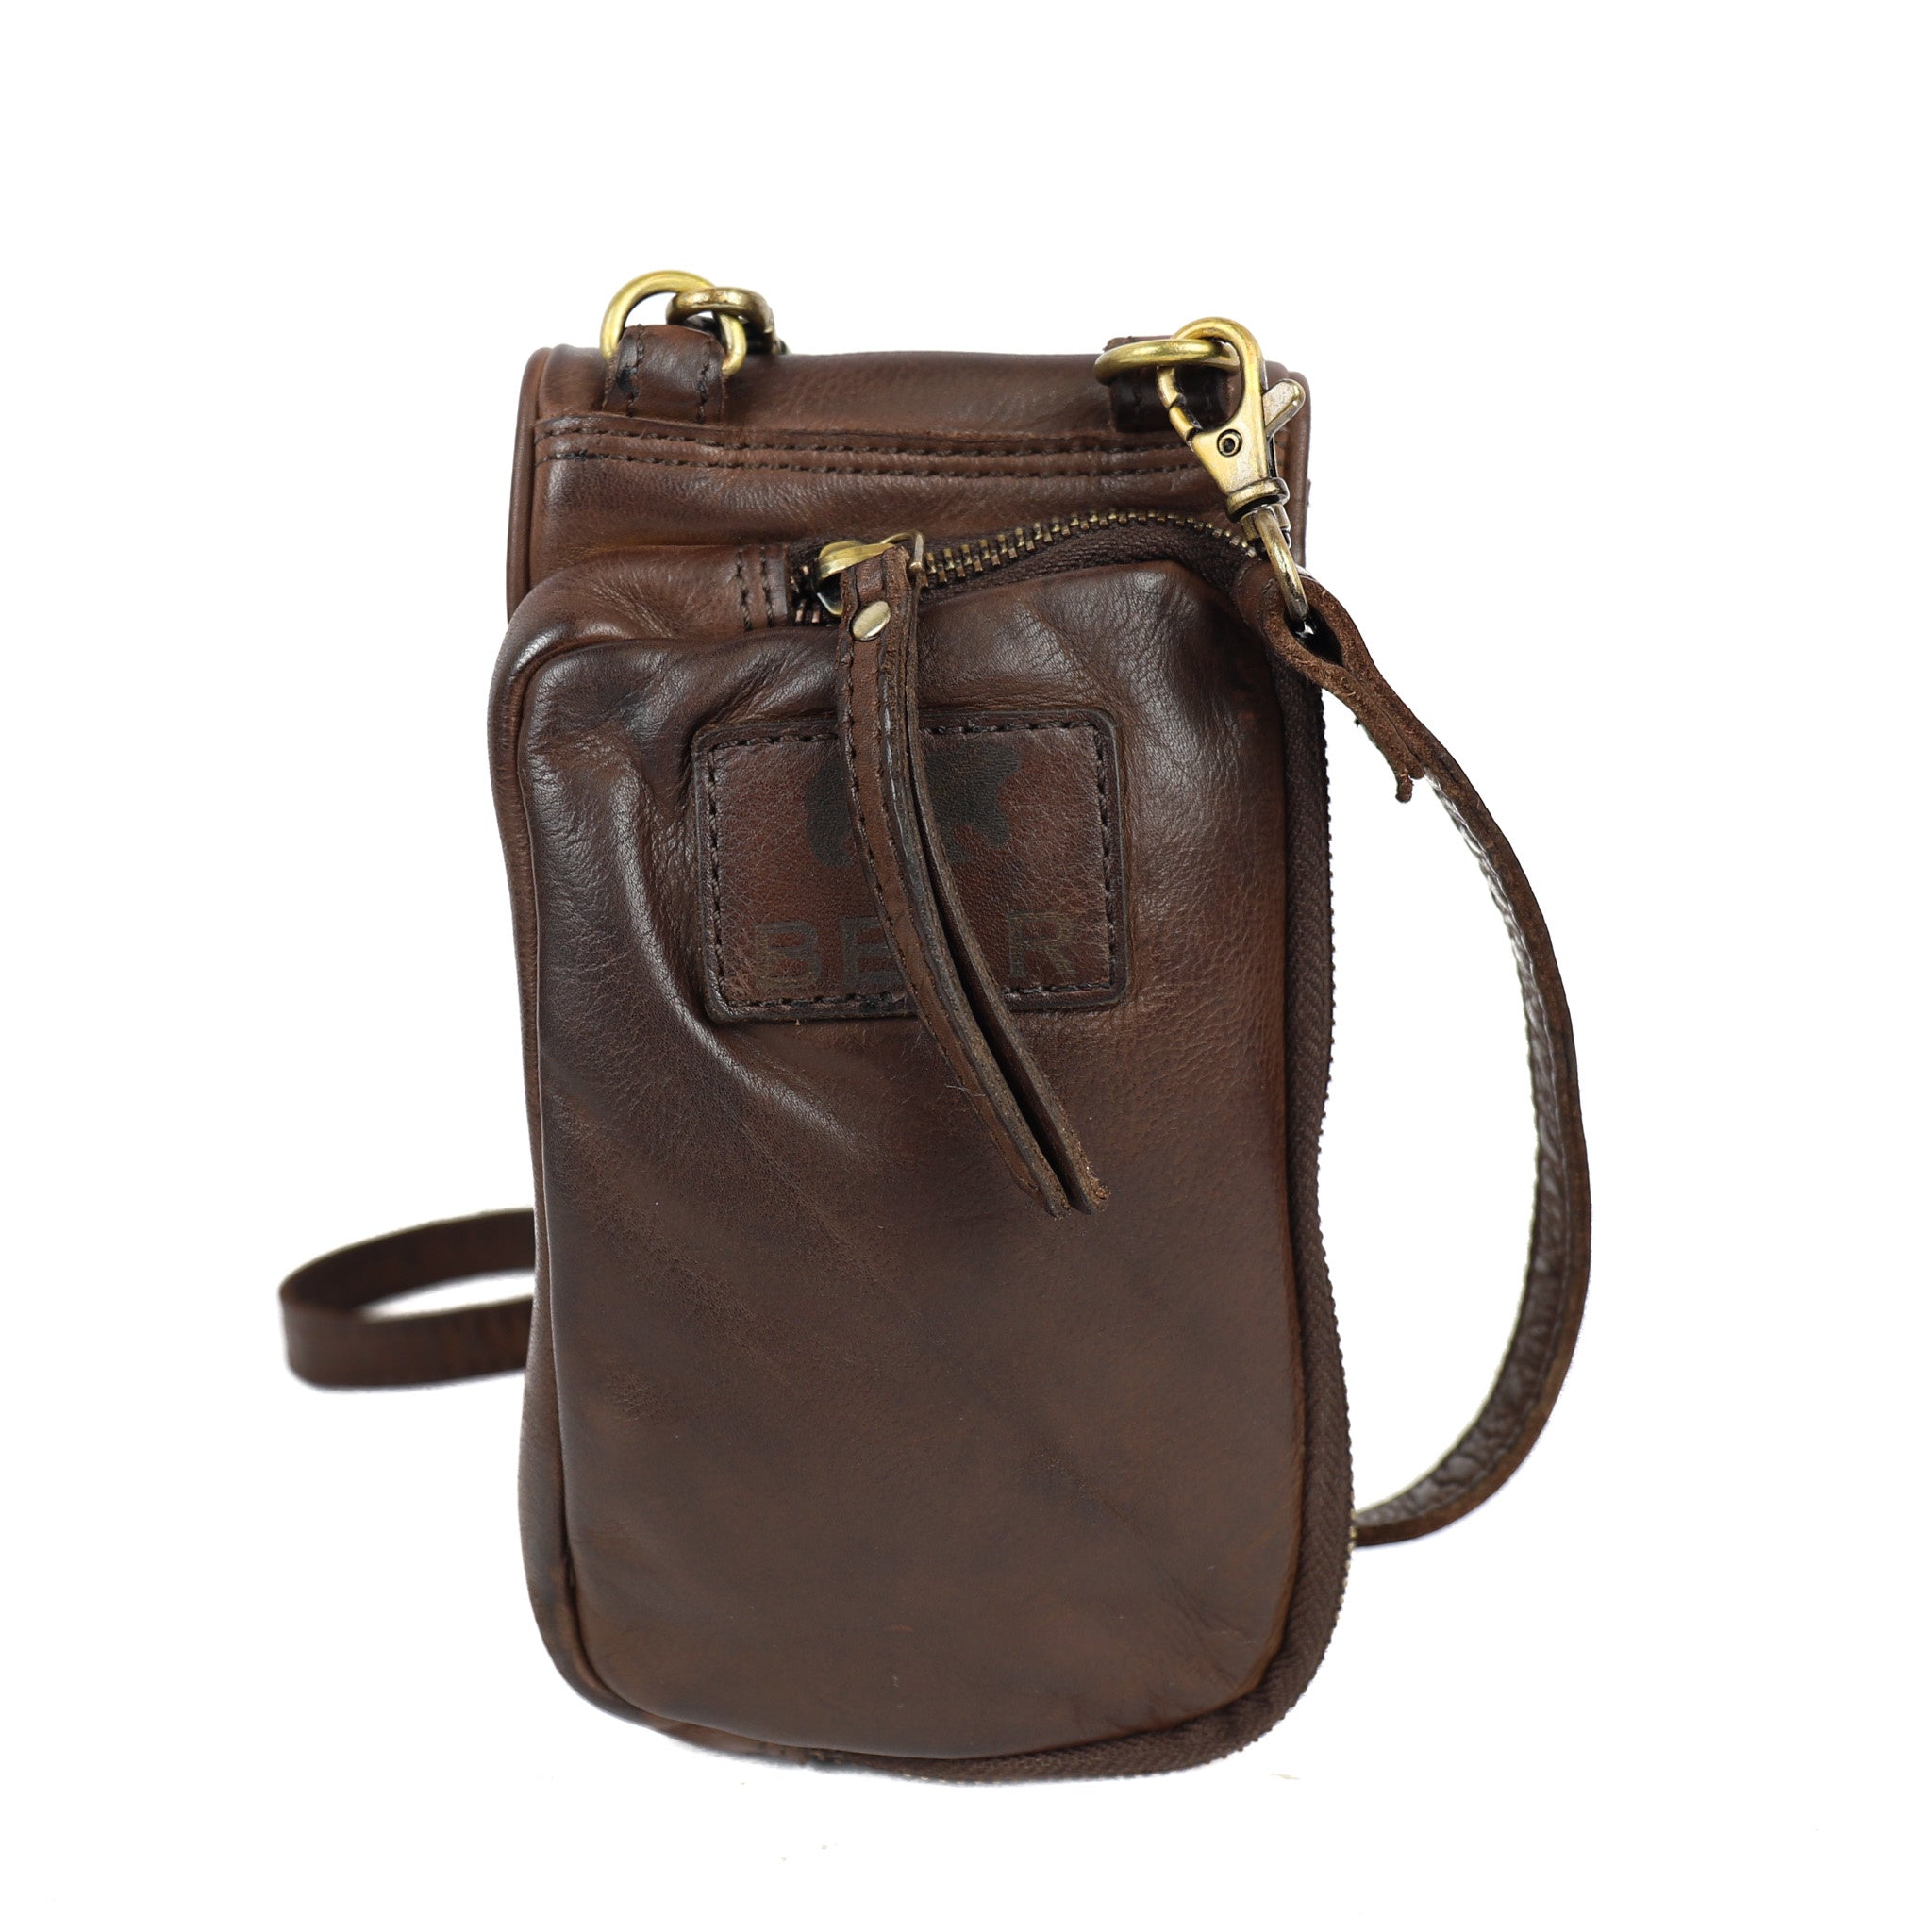 Phone bag 'Saskia' brown - MJ 1718